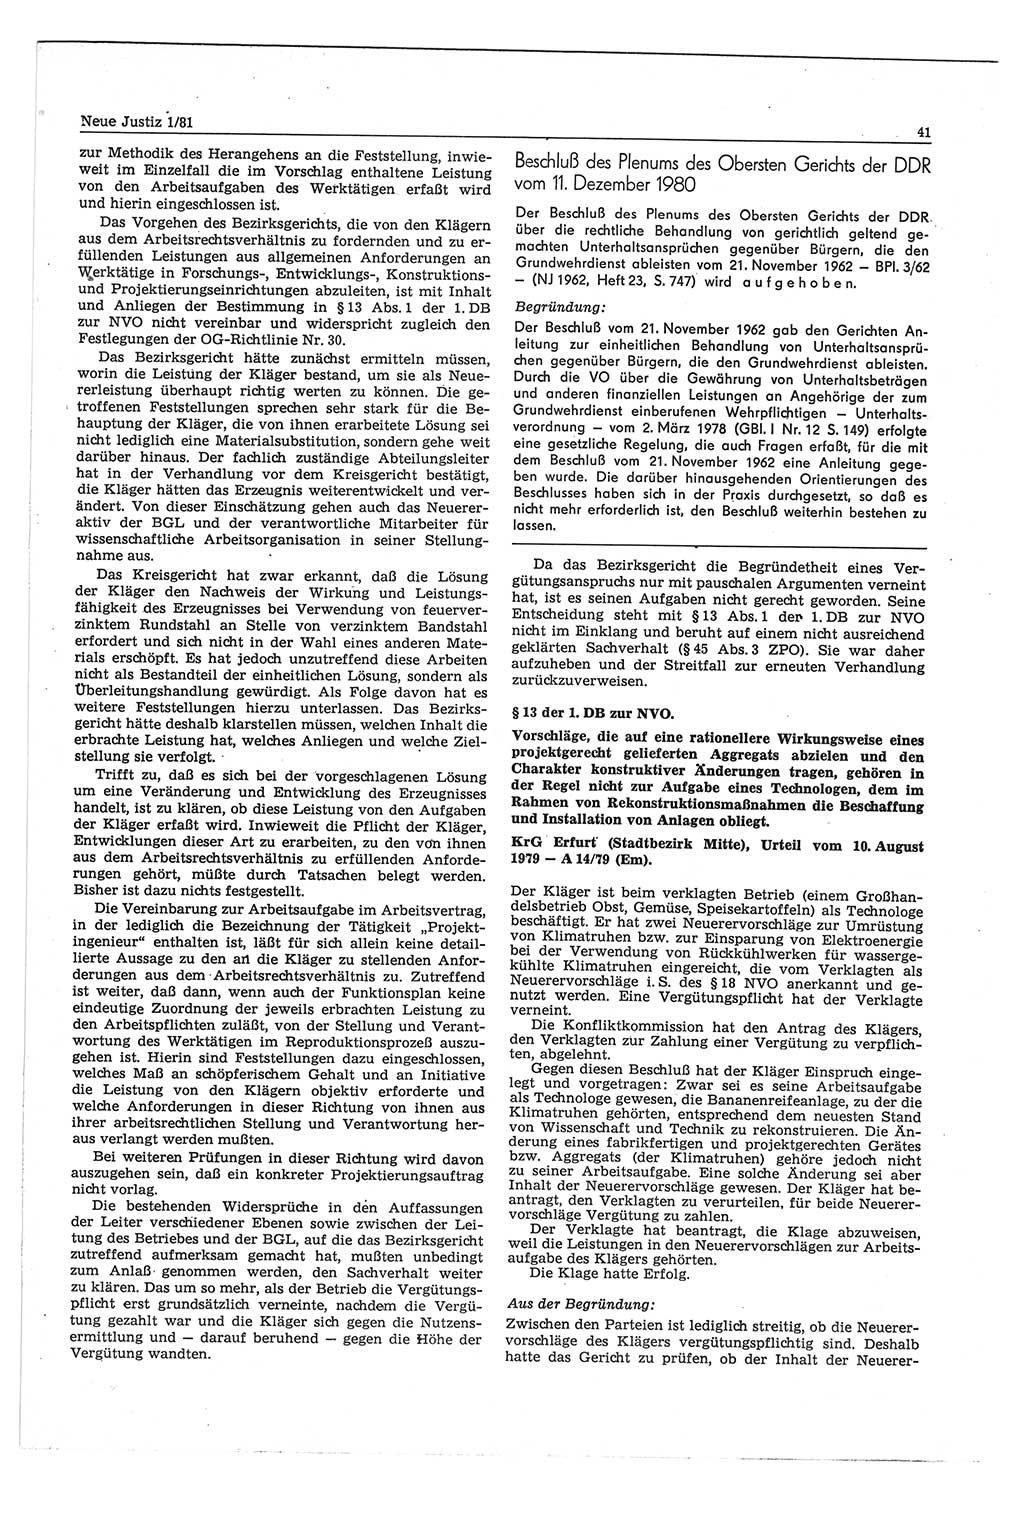 Neue Justiz (NJ), Zeitschrift für sozialistisches Recht und Gesetzlichkeit [Deutsche Demokratische Republik (DDR)], 35. Jahrgang 1981, Seite 41 (NJ DDR 1981, S. 41)